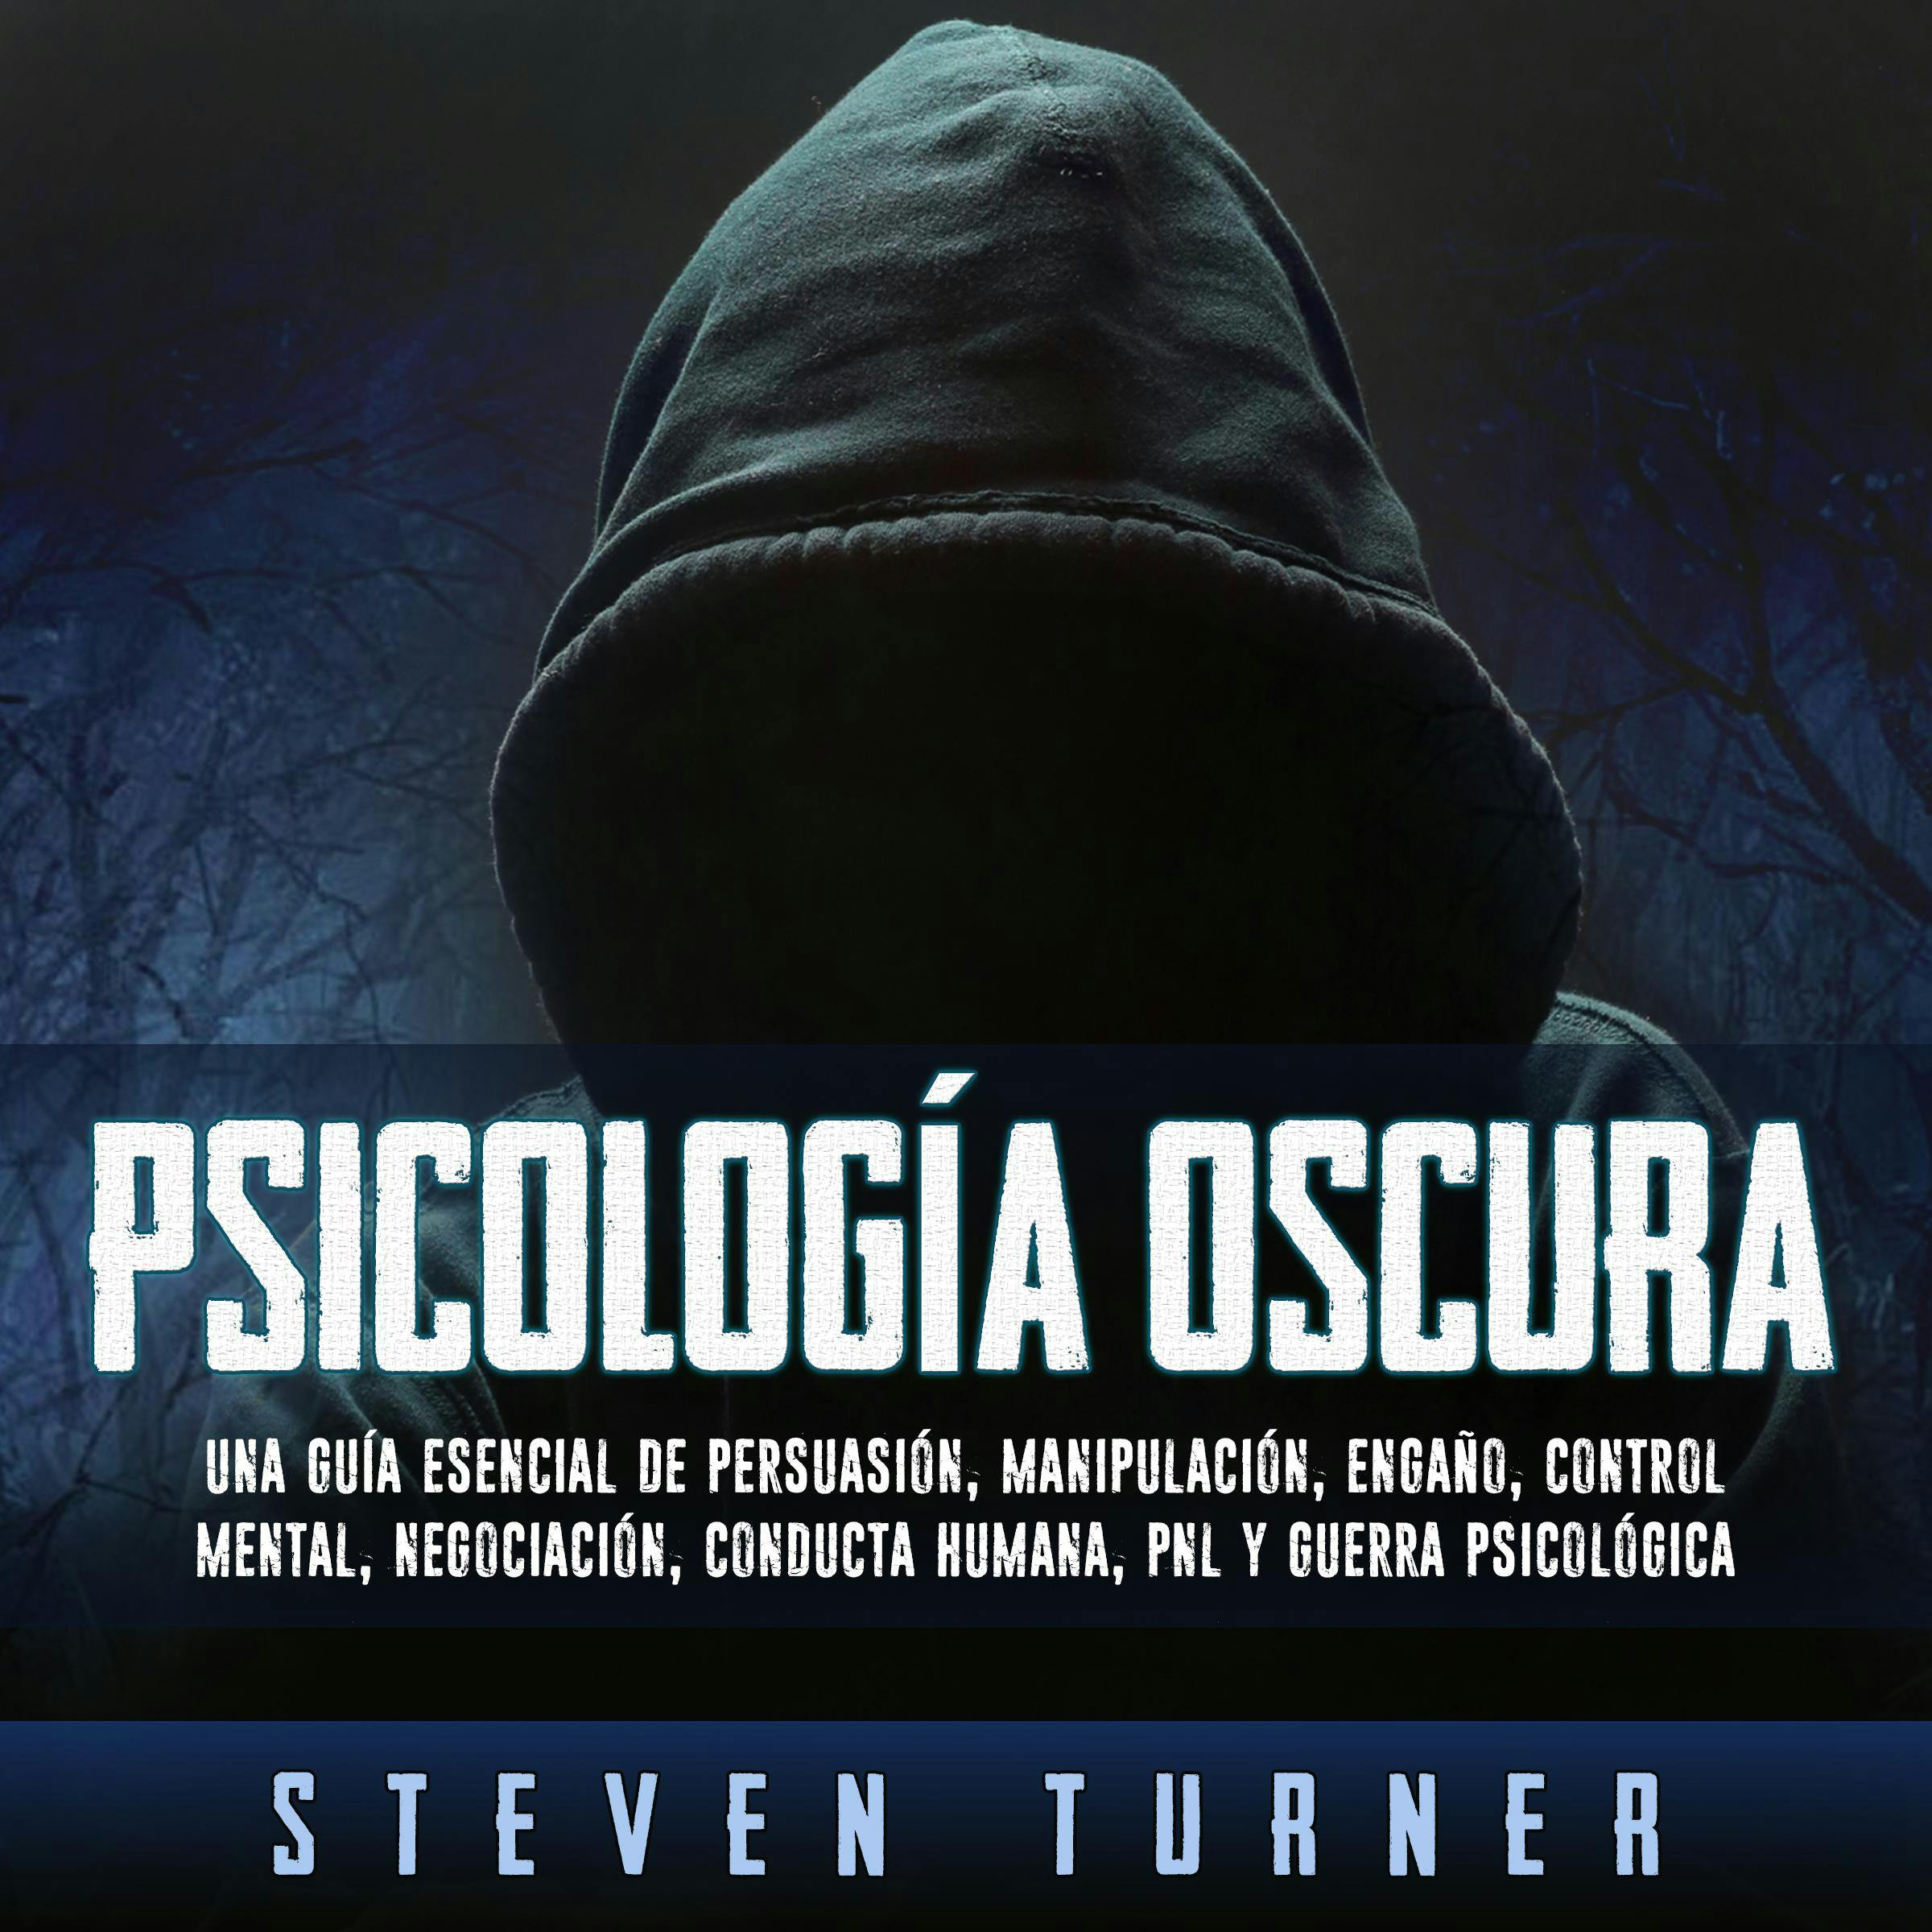 Psicología oscura: Una guía esencial de persuasión, manipulación, engaño, control mental, negociación, conducta humana, PNL y guerra psicológica - Steven Turner